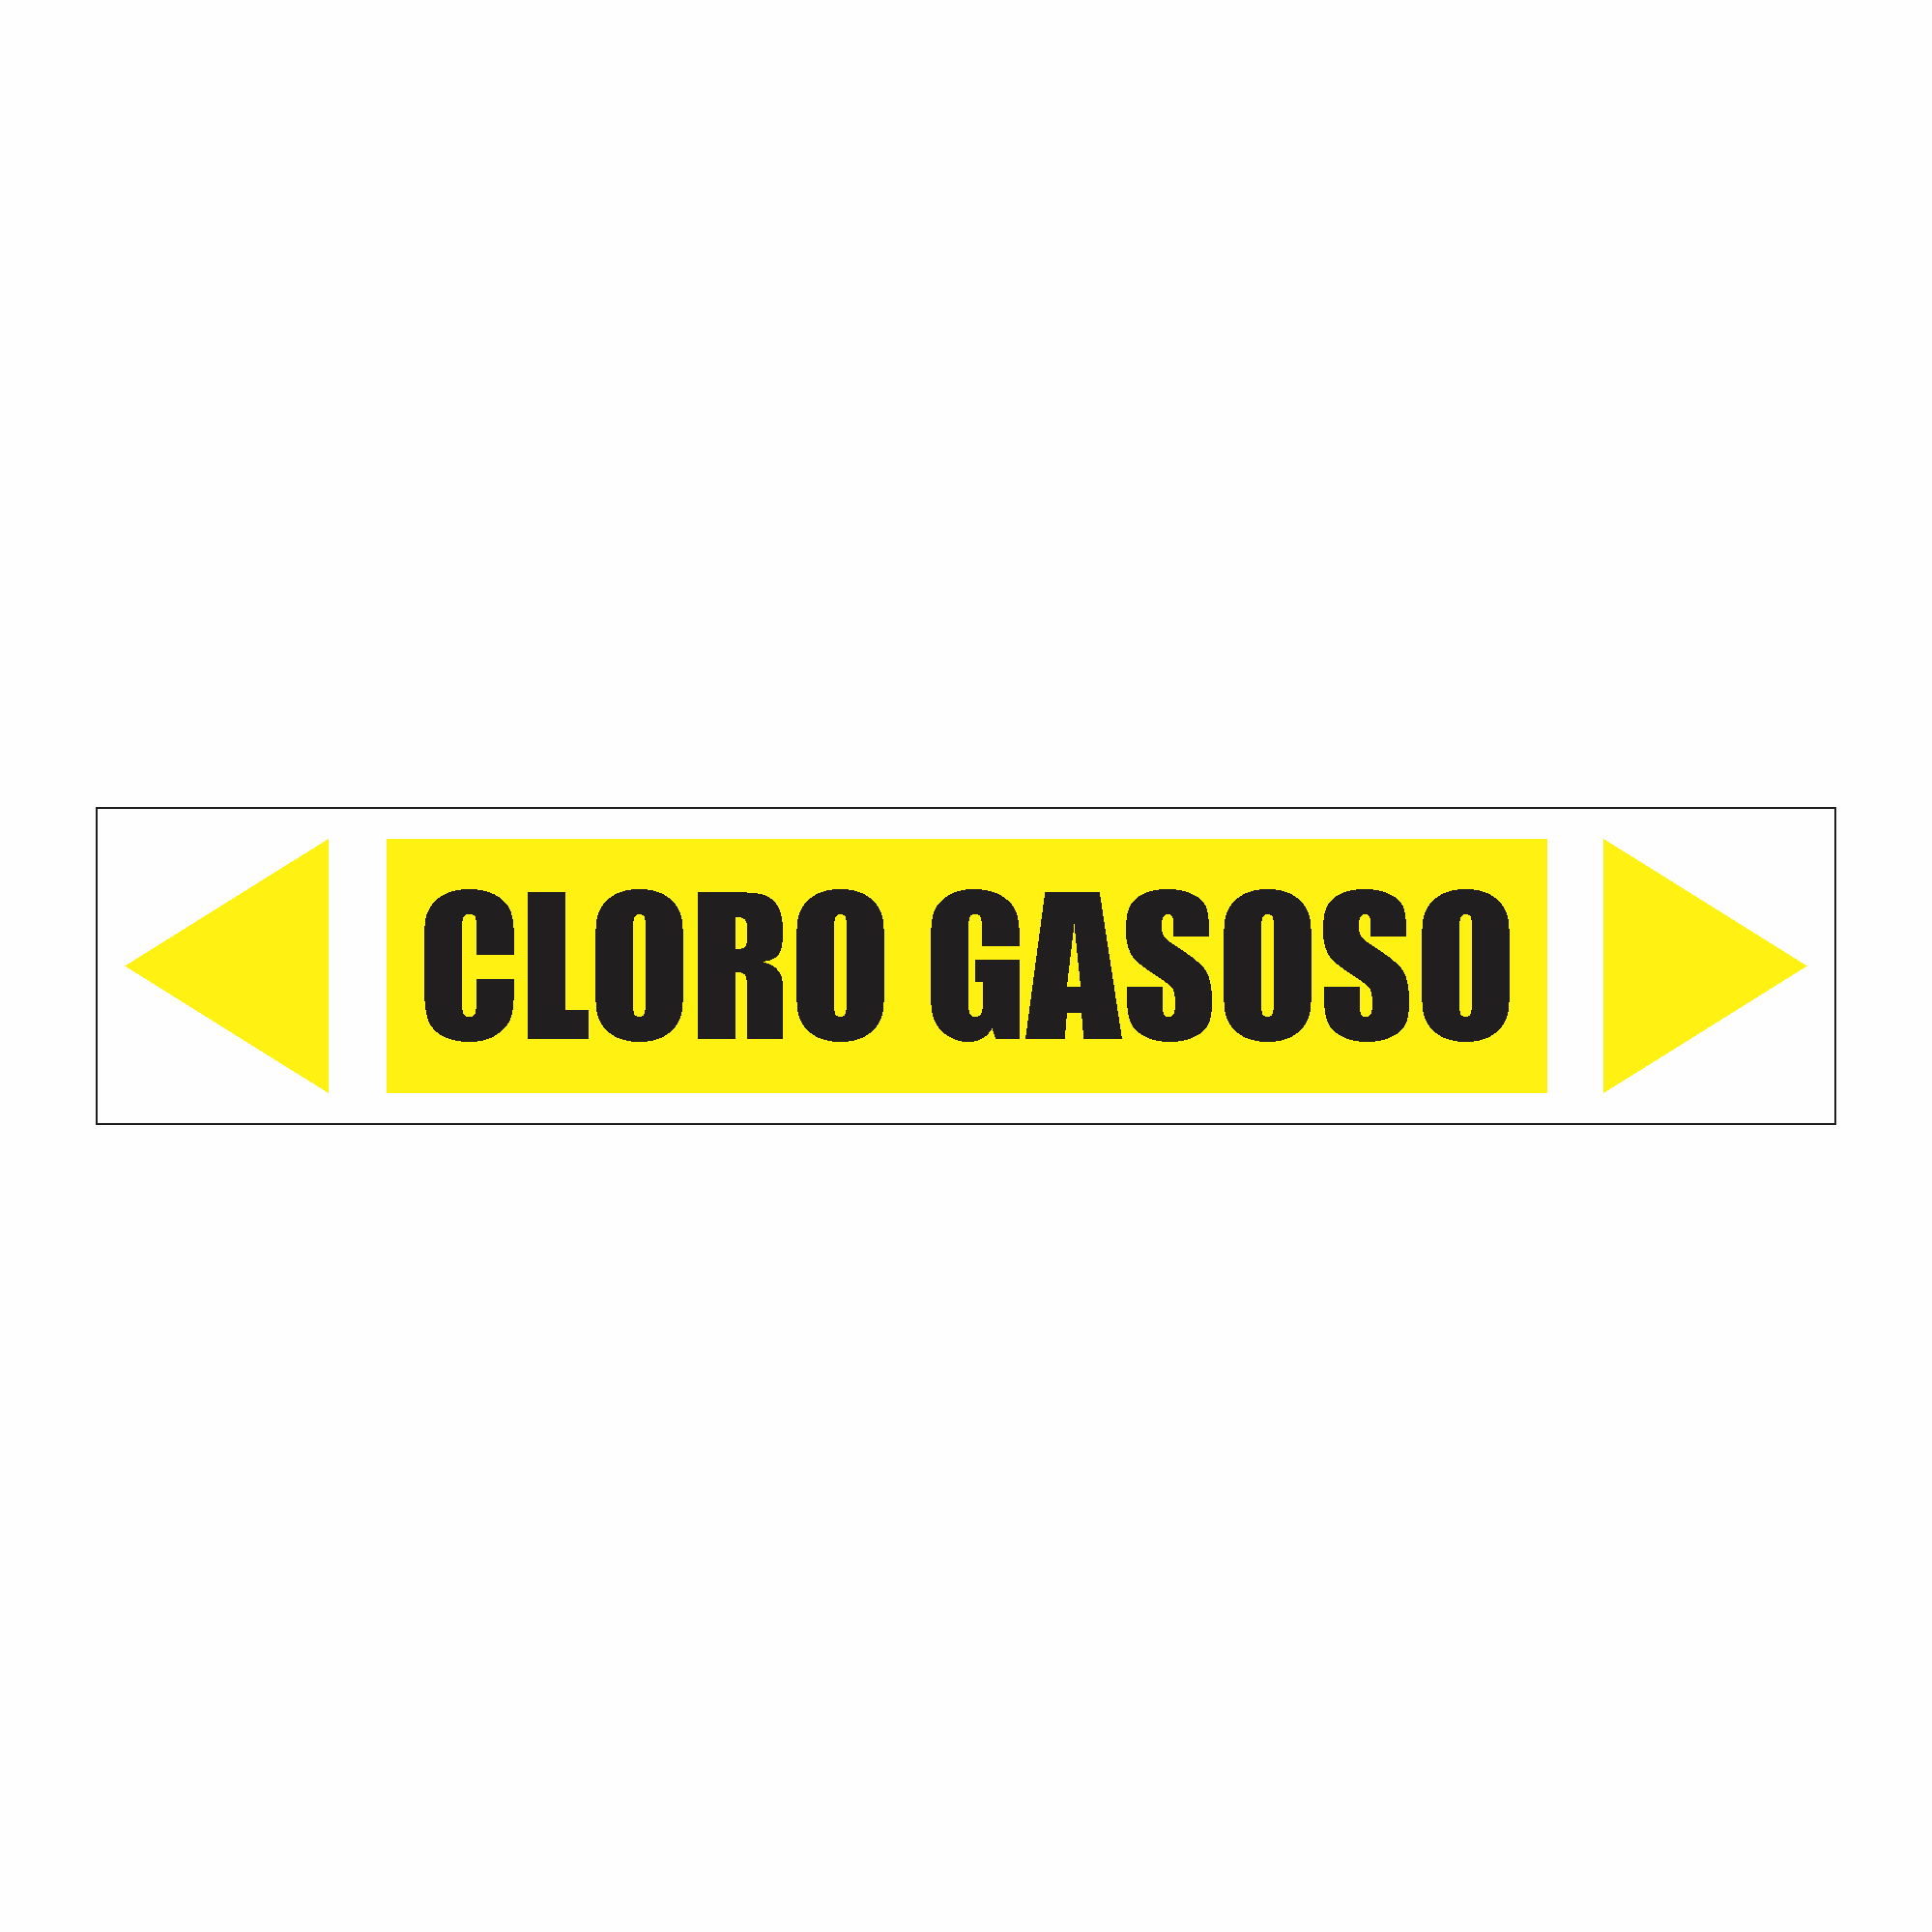 IDT 057 - Cloro Gasoso